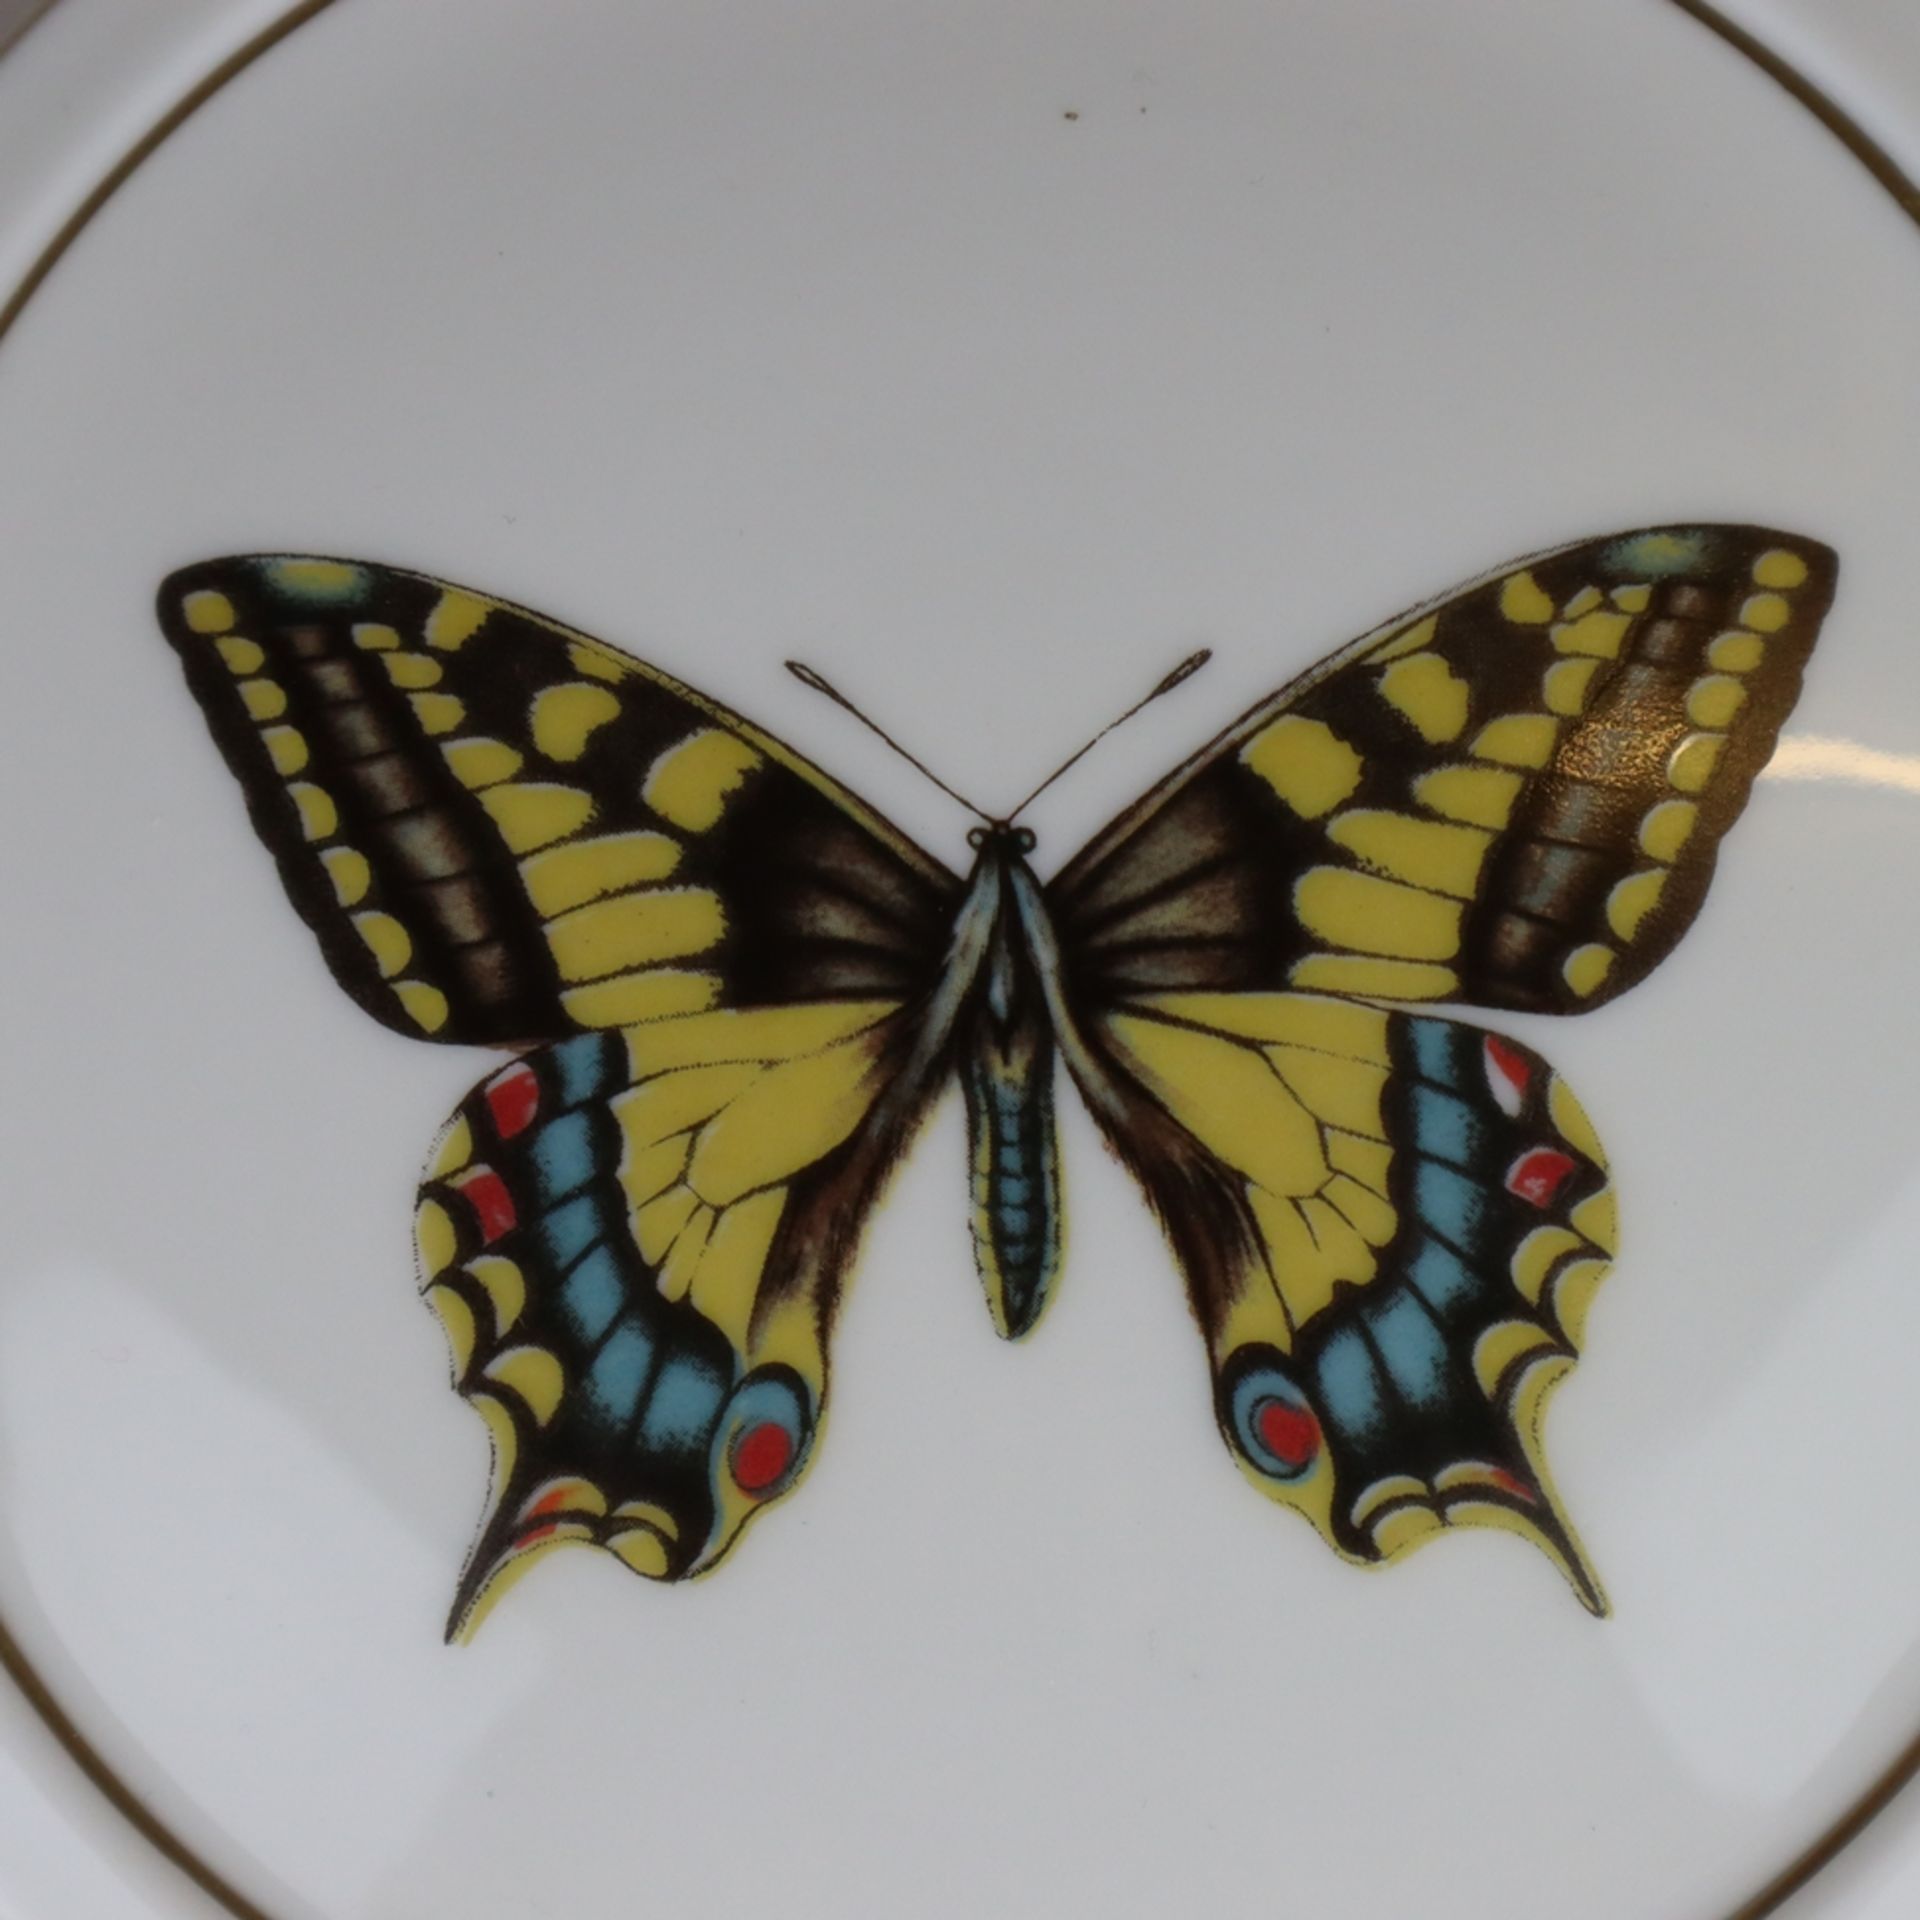 Deckeldose - Hoechst, blaue Radmarke, in Gold bez. "AC", im Spiegel polychromer Schmetterlingsdekor, - Bild 2 aus 3